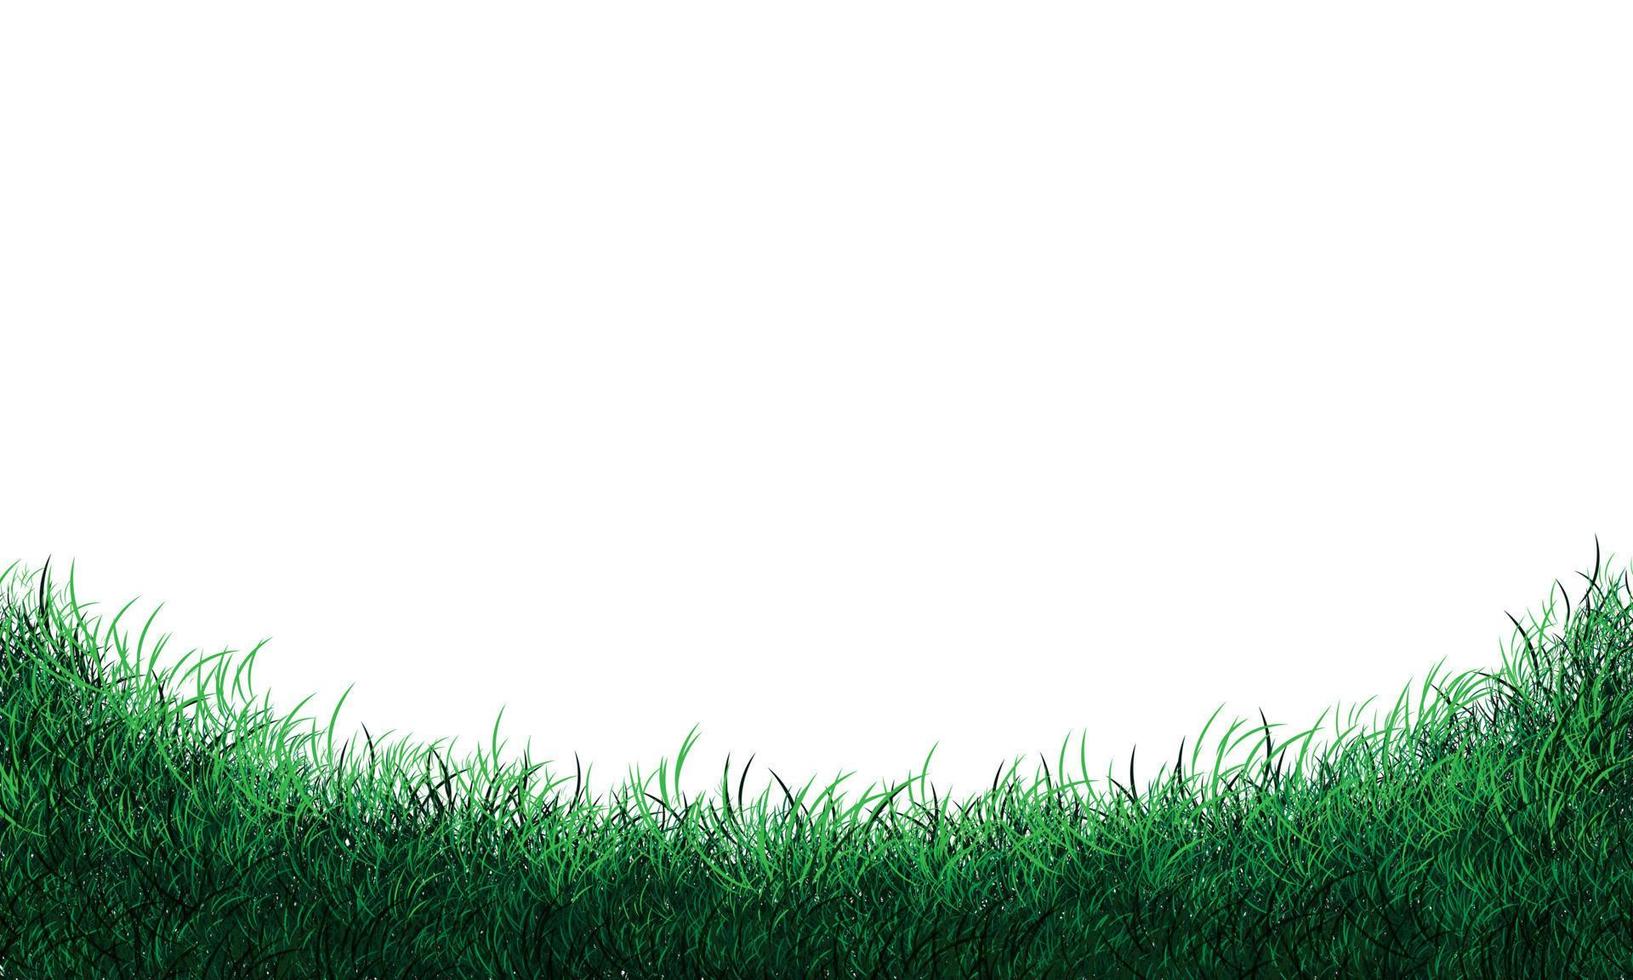 courbe de champ d'herbe verte réaliste sur le vecteur de fond blanc